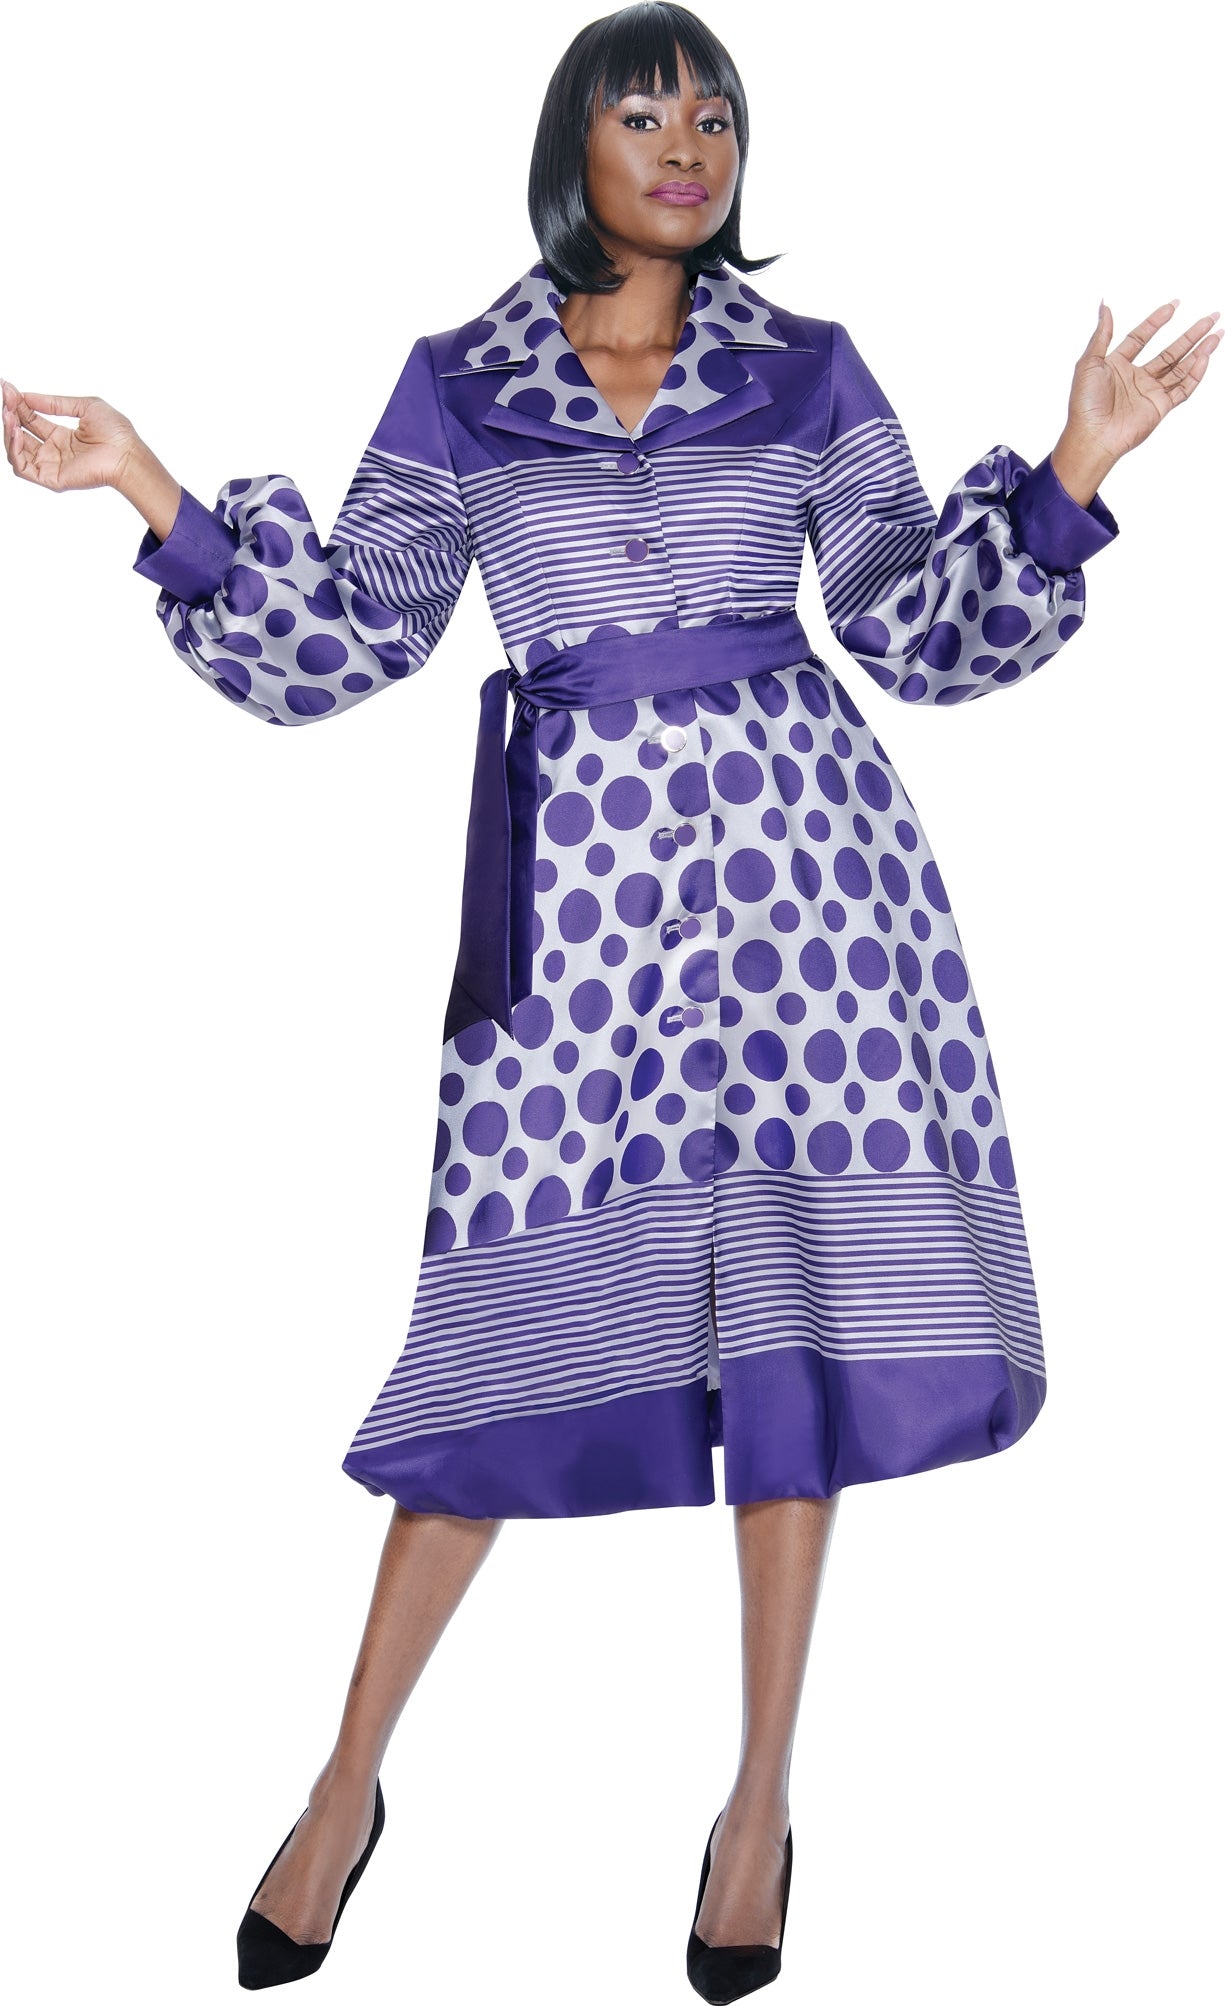 Terramina Church Dress 7052-Purple/White - Church Suits For Less